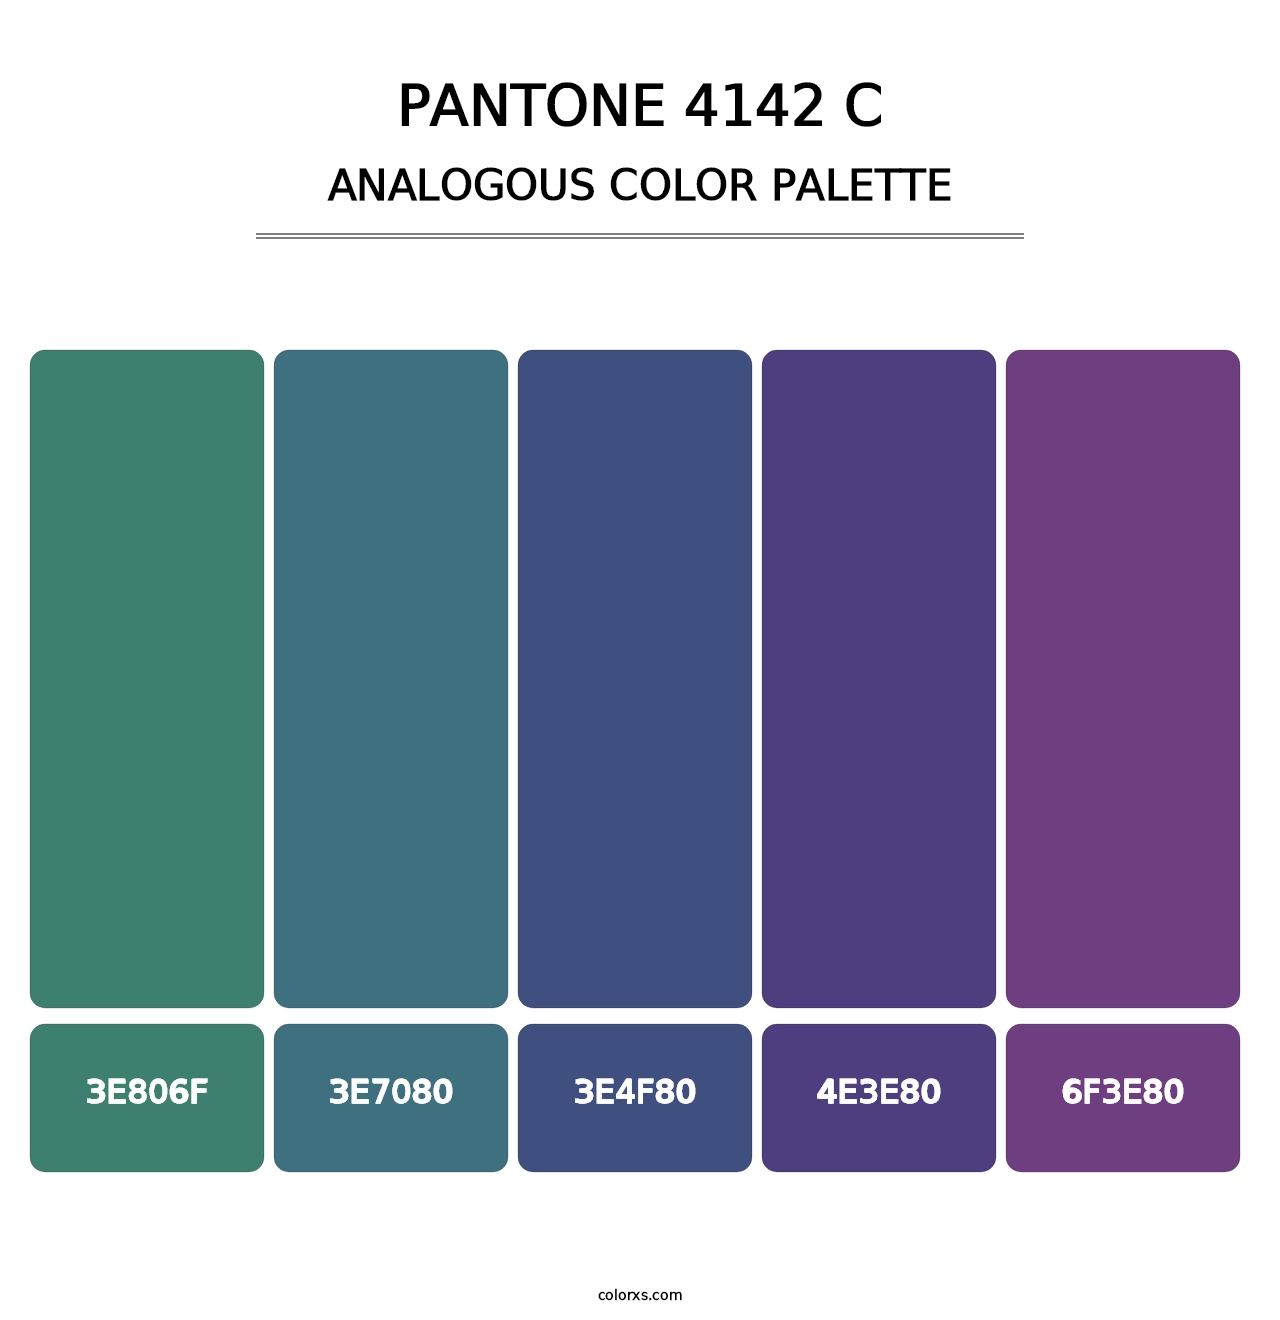 PANTONE 4142 C - Analogous Color Palette